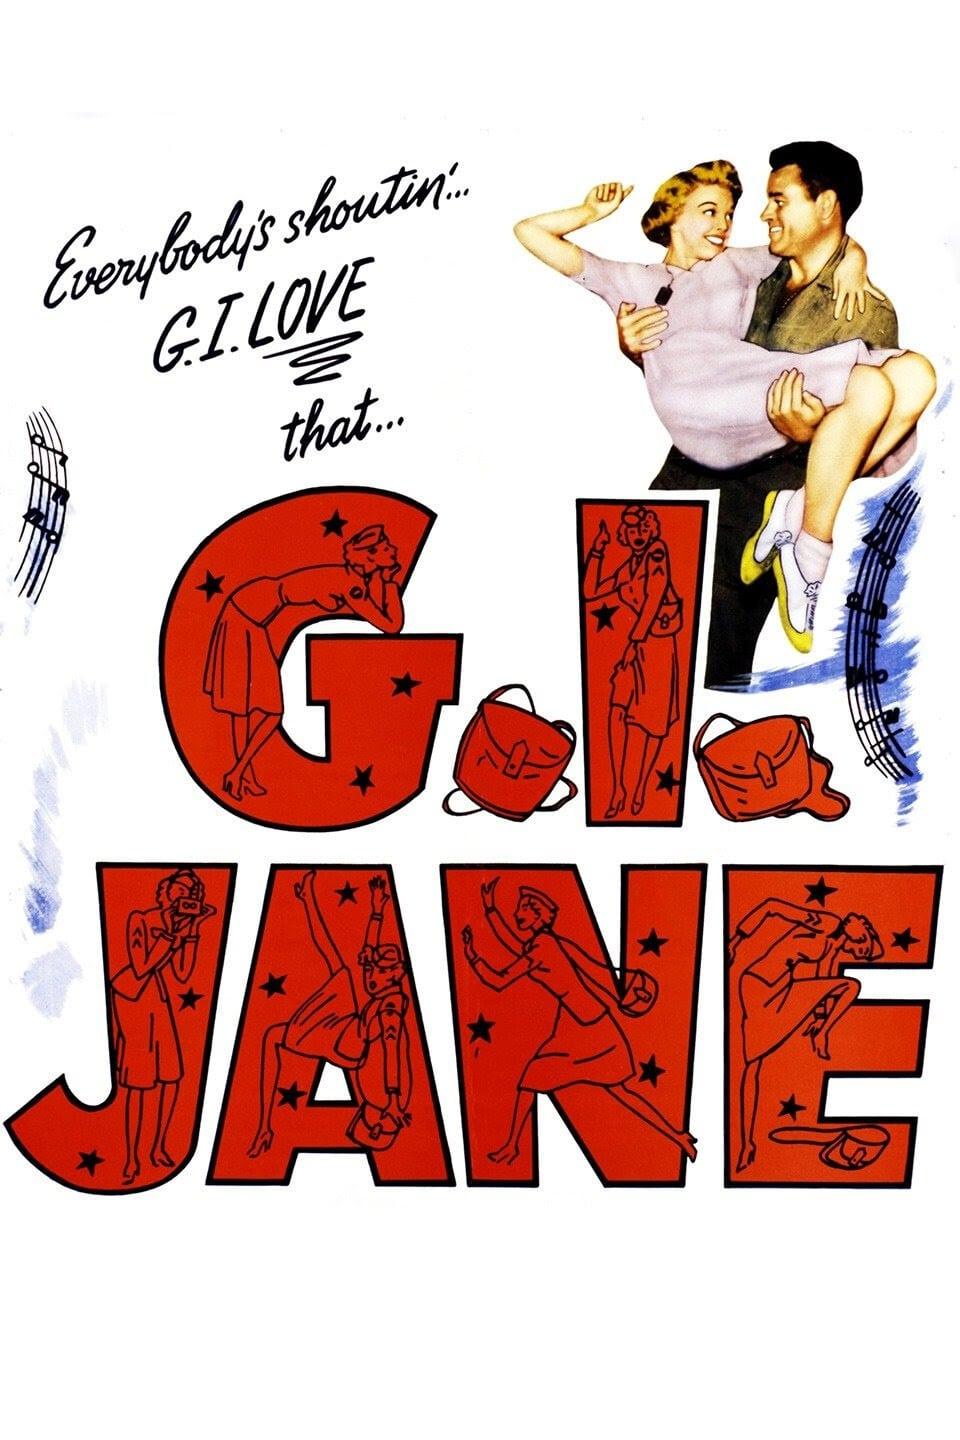 G.I. Jane poster